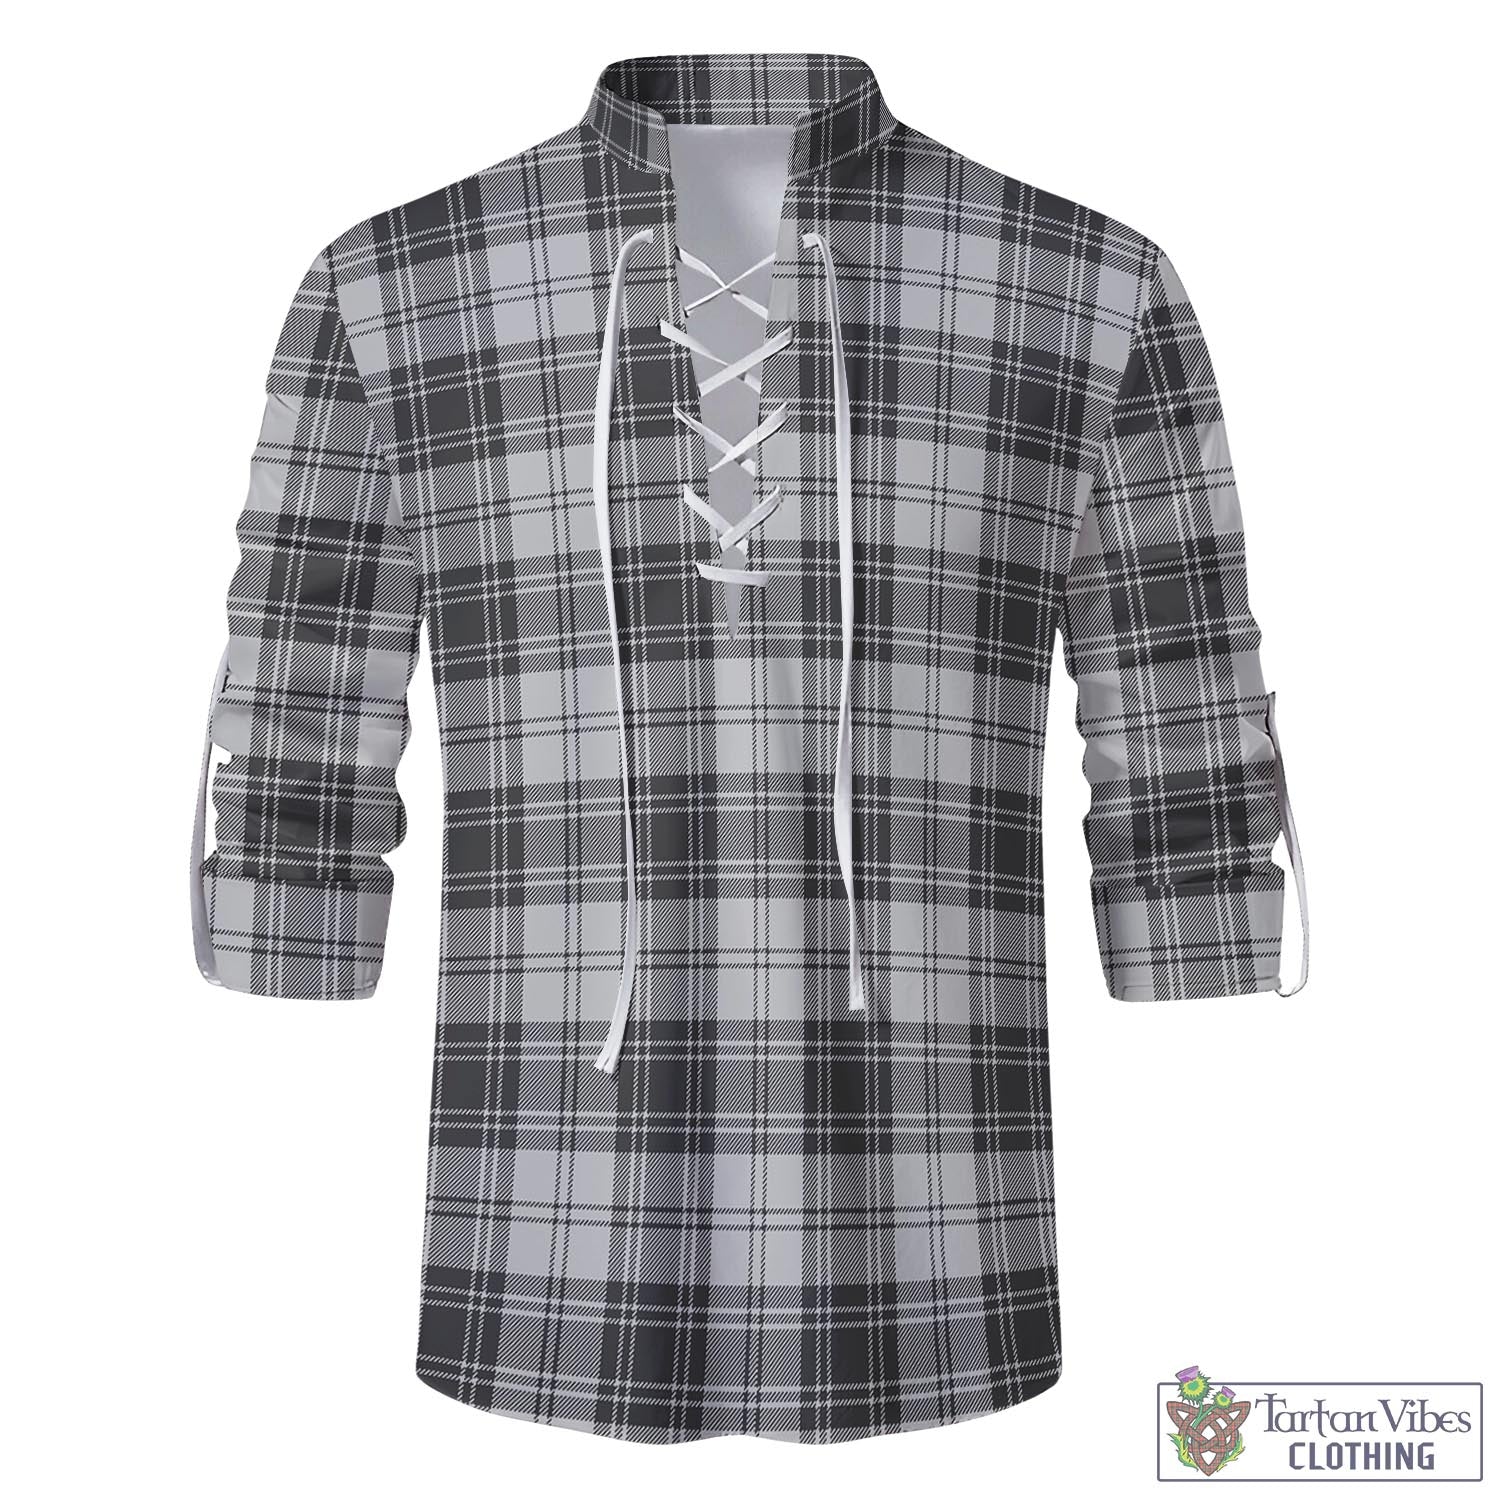 Tartan Vibes Clothing Glendinning Tartan Men's Scottish Traditional Jacobite Ghillie Kilt Shirt